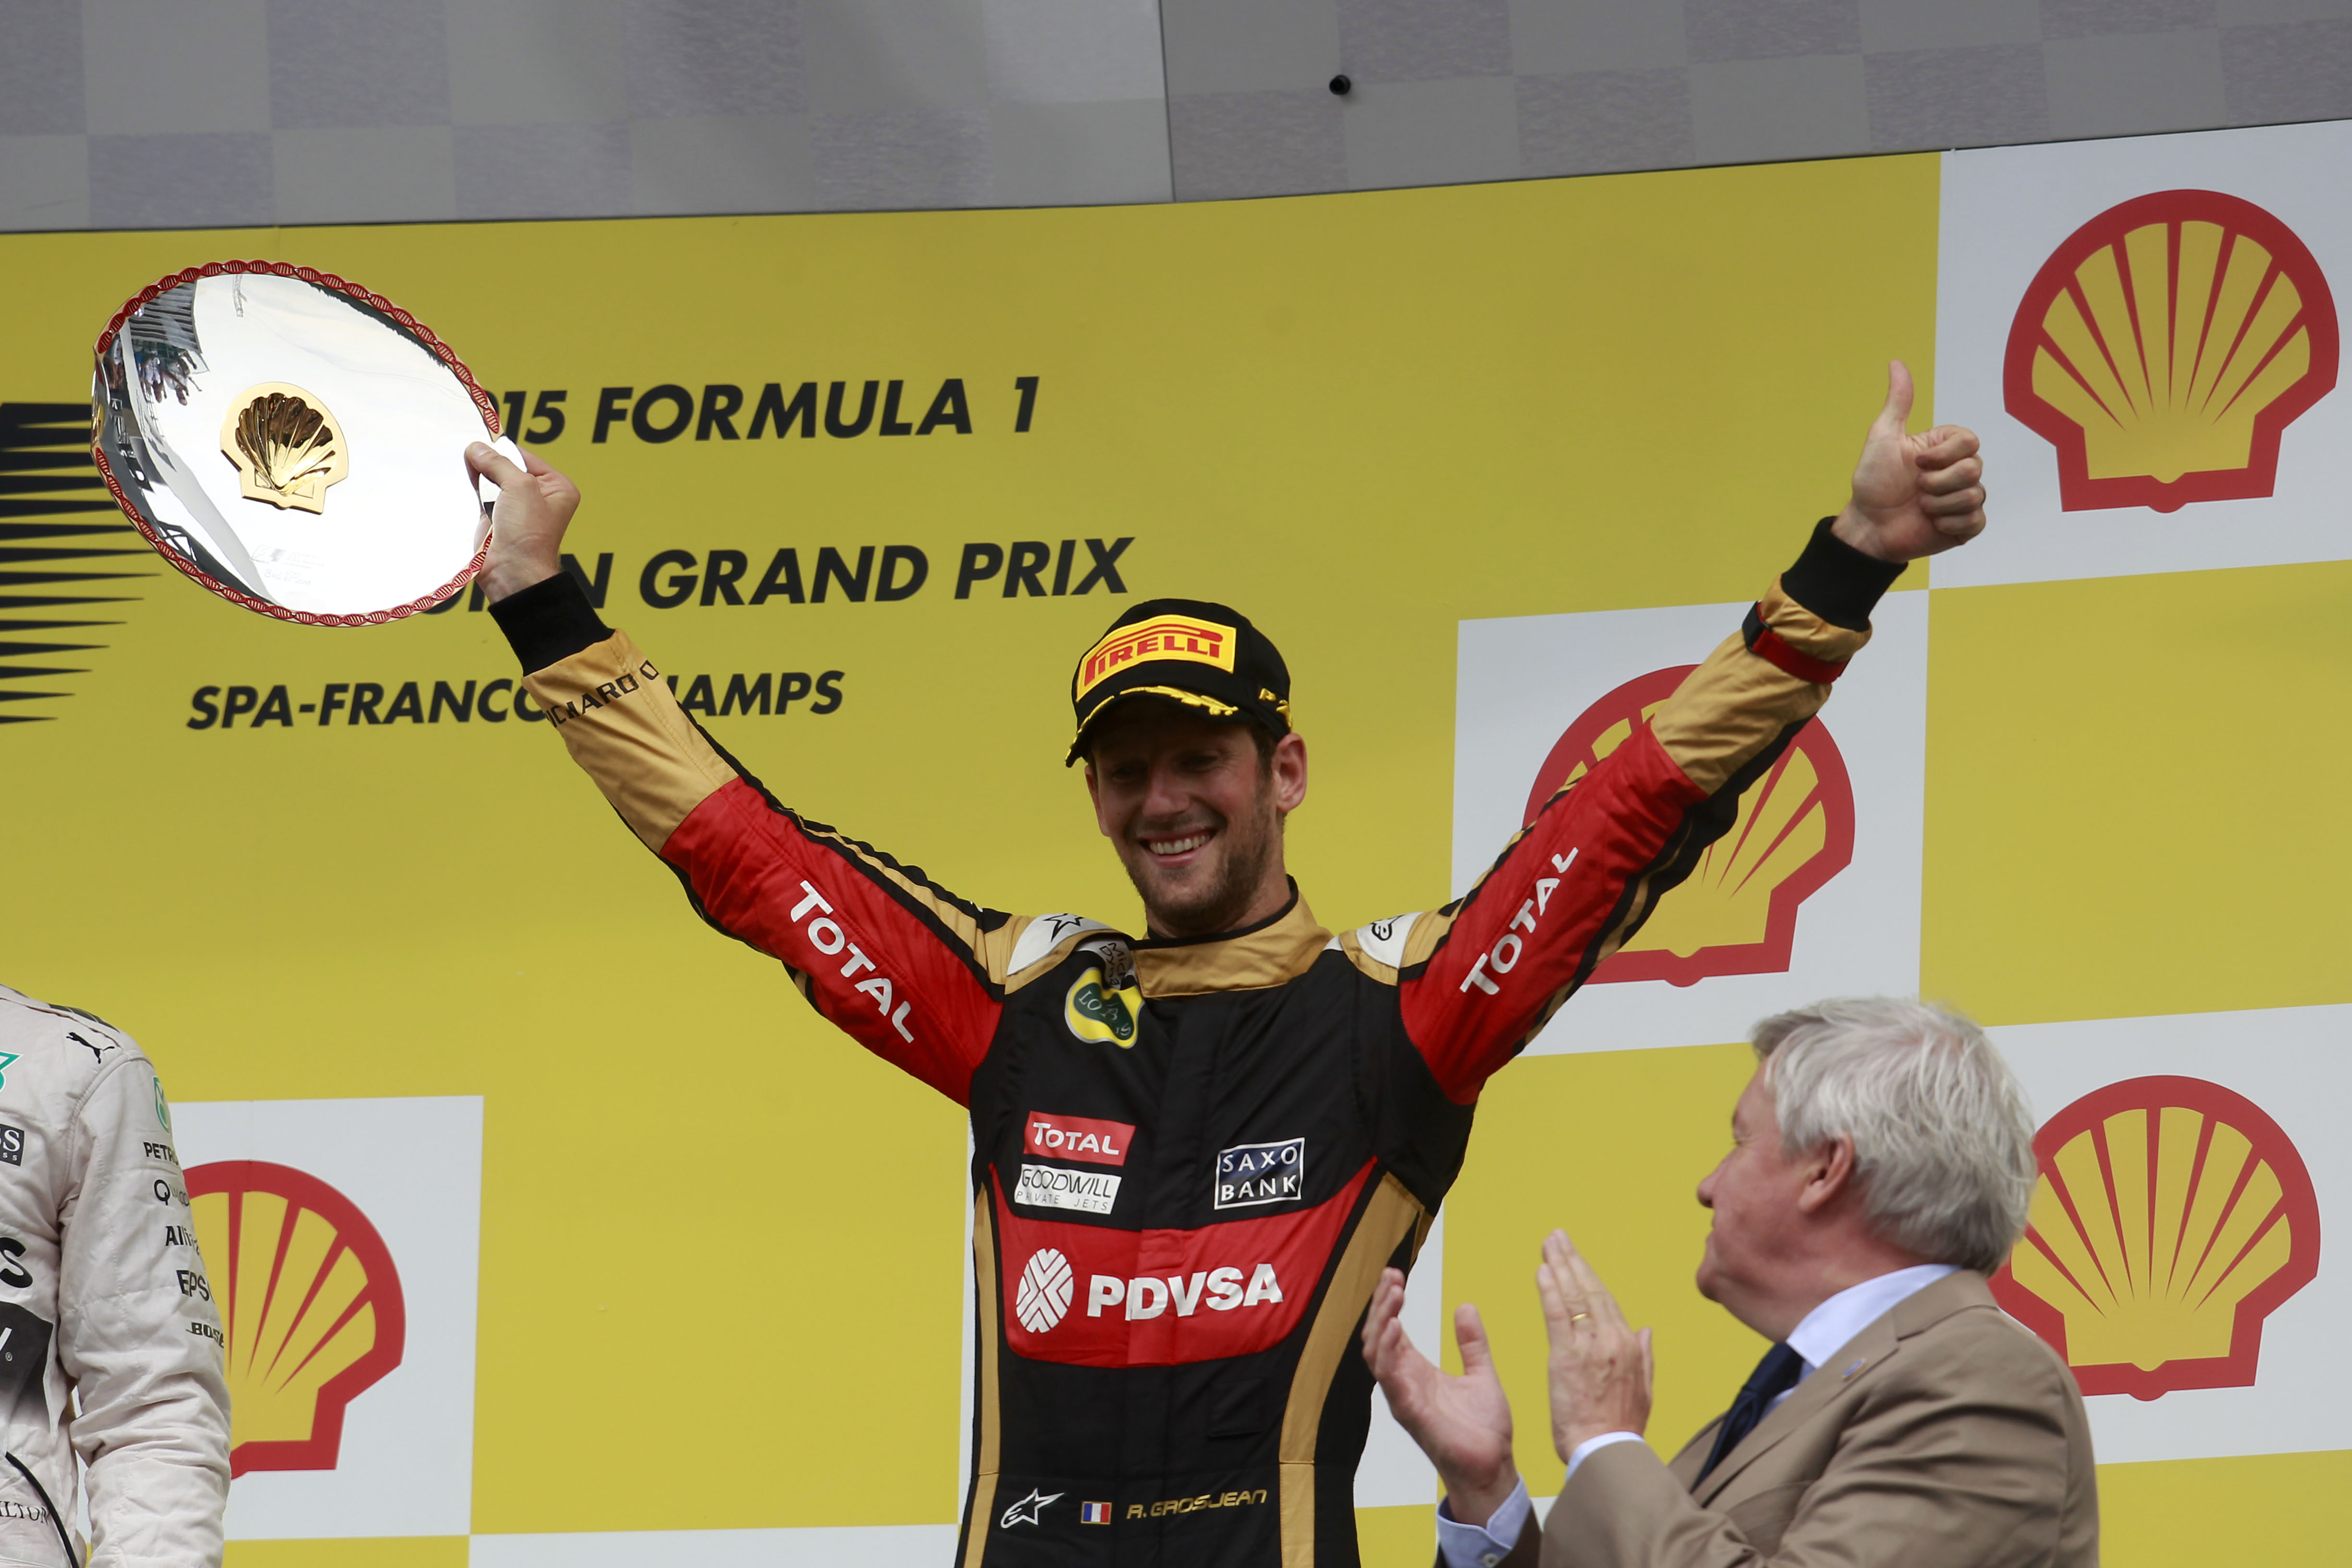 Romain Grosjean Lotus F1 podium 2015 Belgian Grand Prix